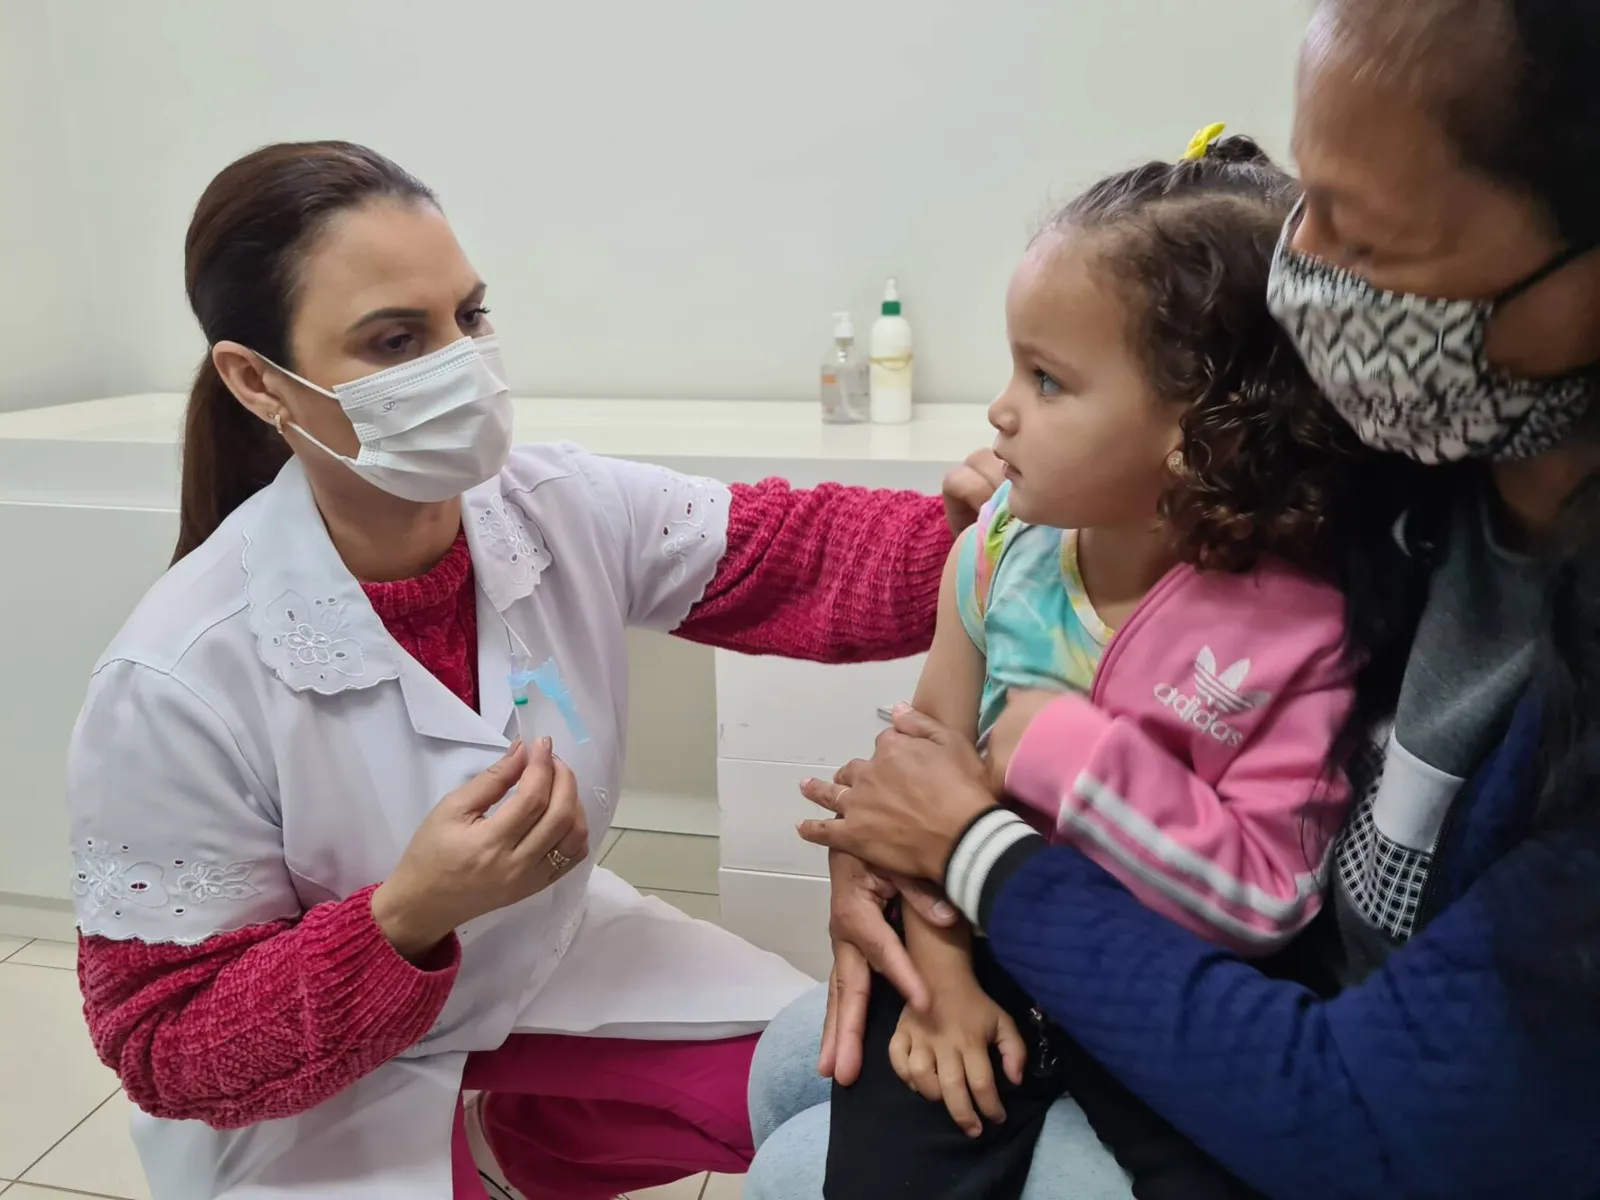 “A vacina significa saúde e proteção. Moramos um pouco longe daqui, mas não queríamos esperar mais para ver nossa pequena imunizada”, diz Pamela Bregantini, mãe de Gabriele, 3.